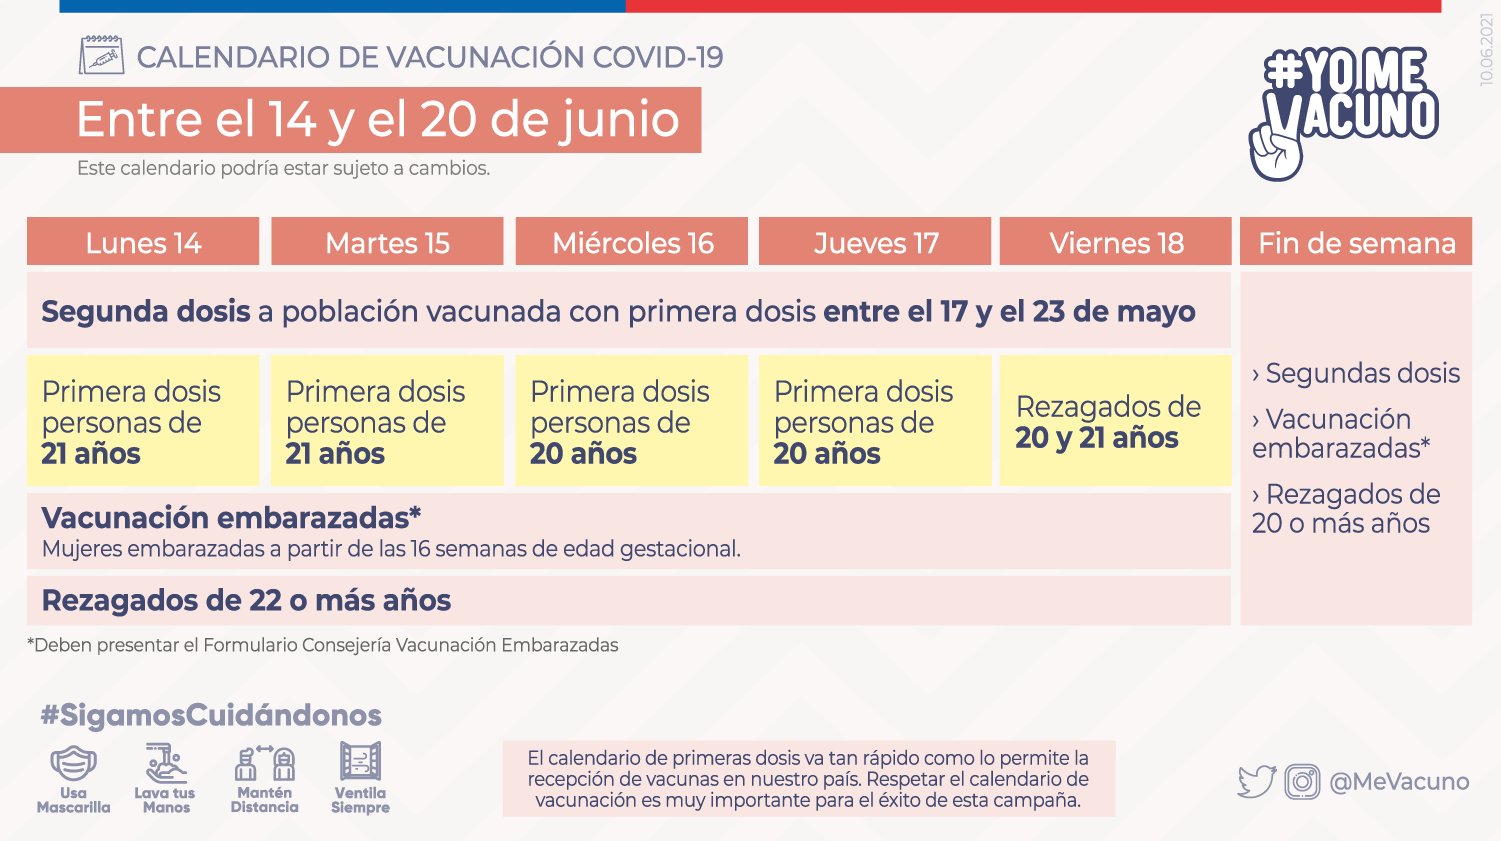 Calendario De Vacunación Covid 19 Semana 14 Al 20 De Junio